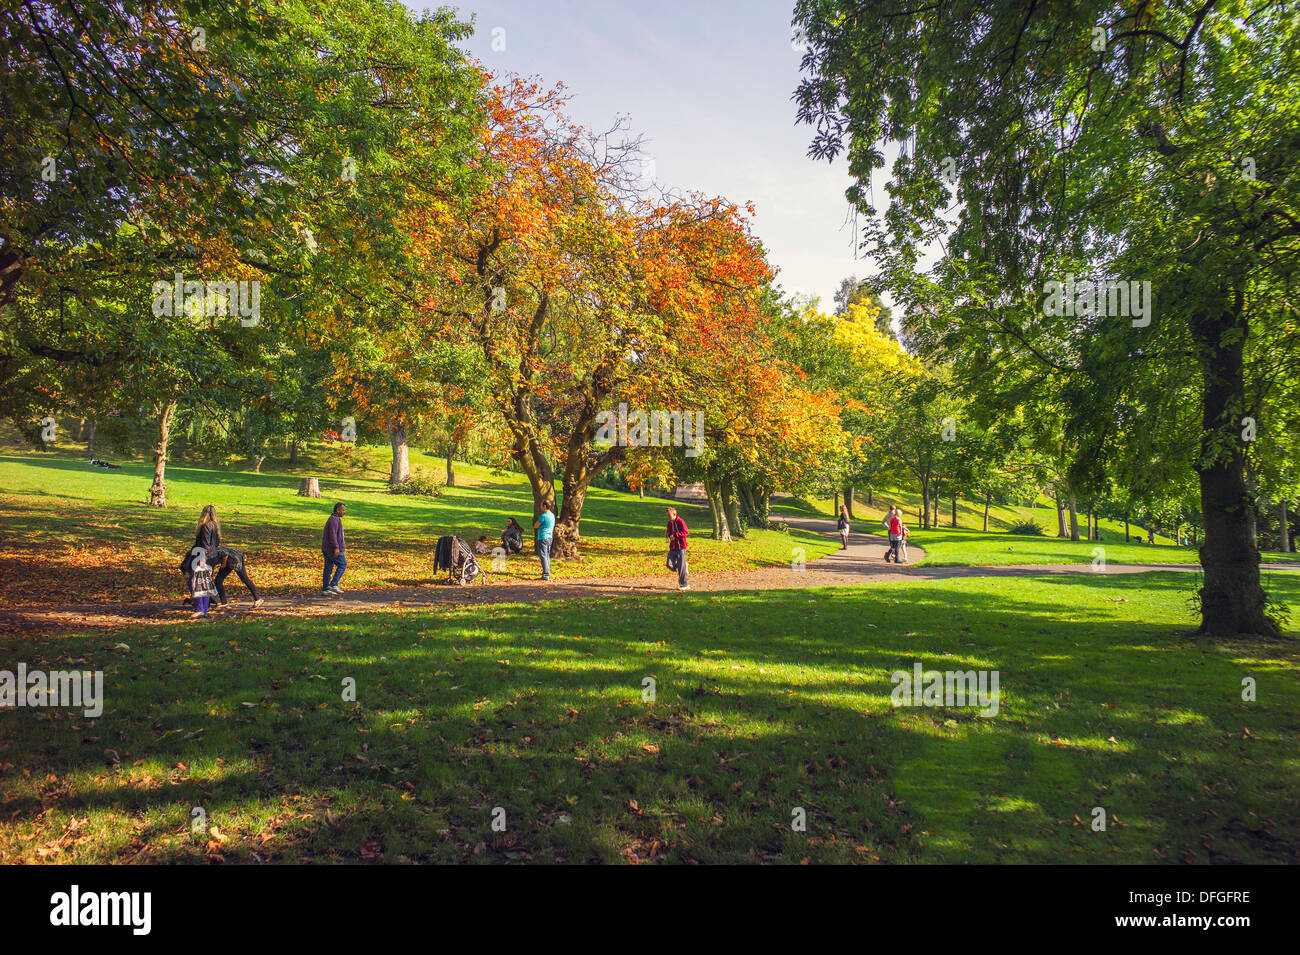 Vistas generales del parque Kelvingrove, Glasgow, algunos colores de otoño y la gente disfruta caminando o mirando el paisaje maravilloso Foto de stock